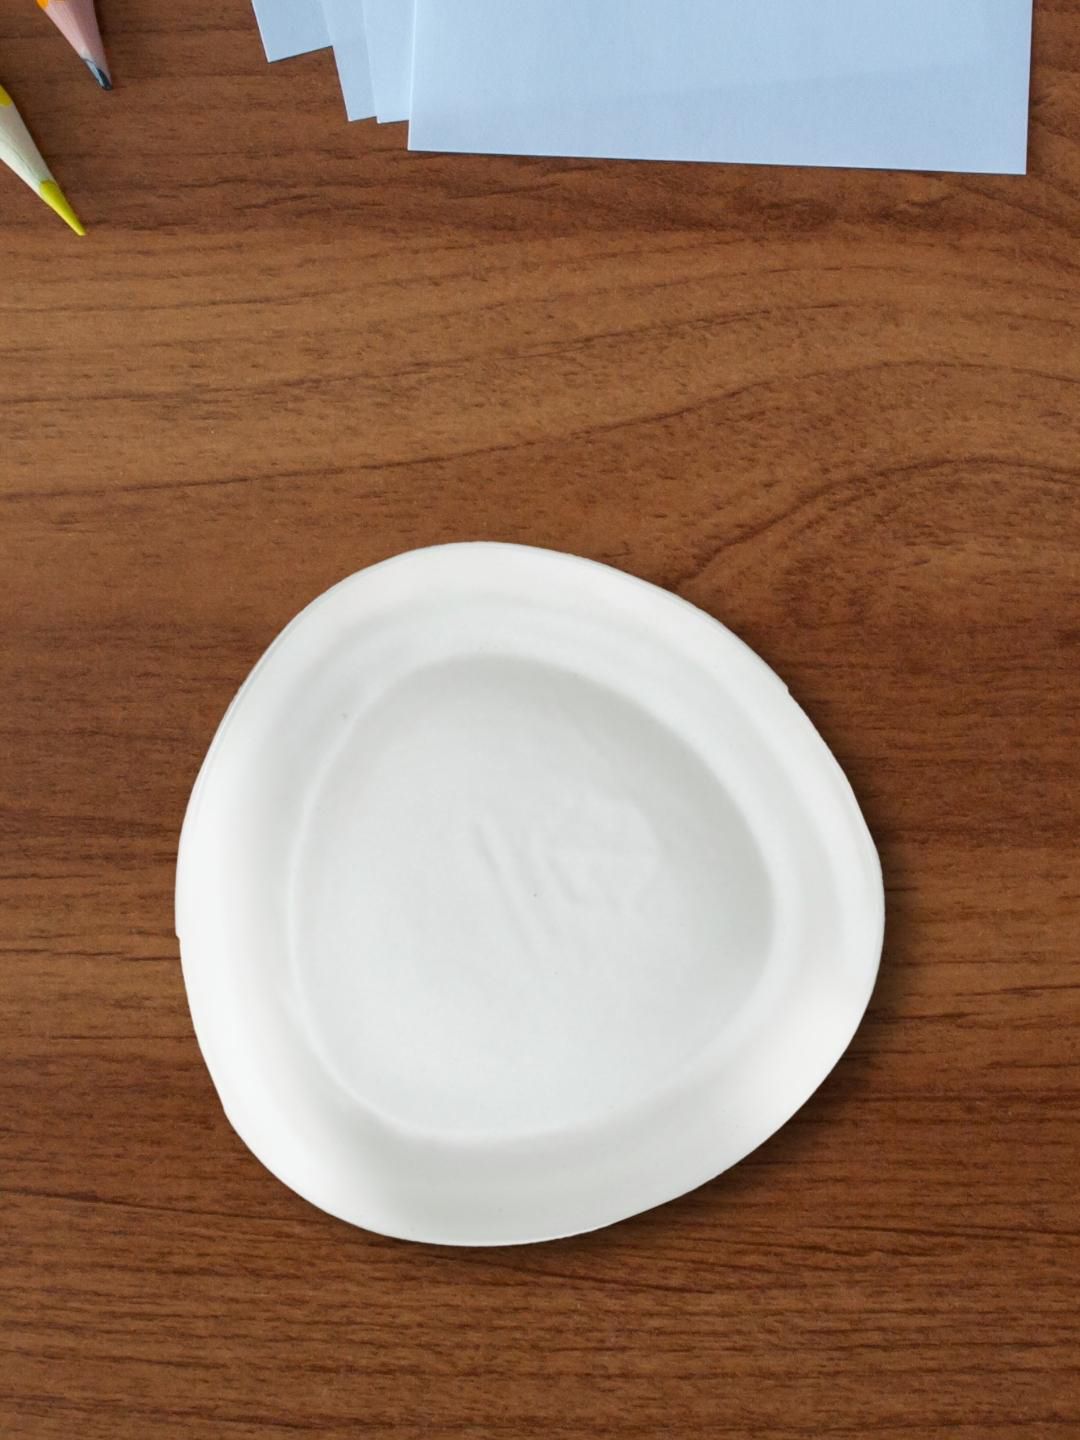 Nestasia White Triangle Small Ceramic Plate Price in India